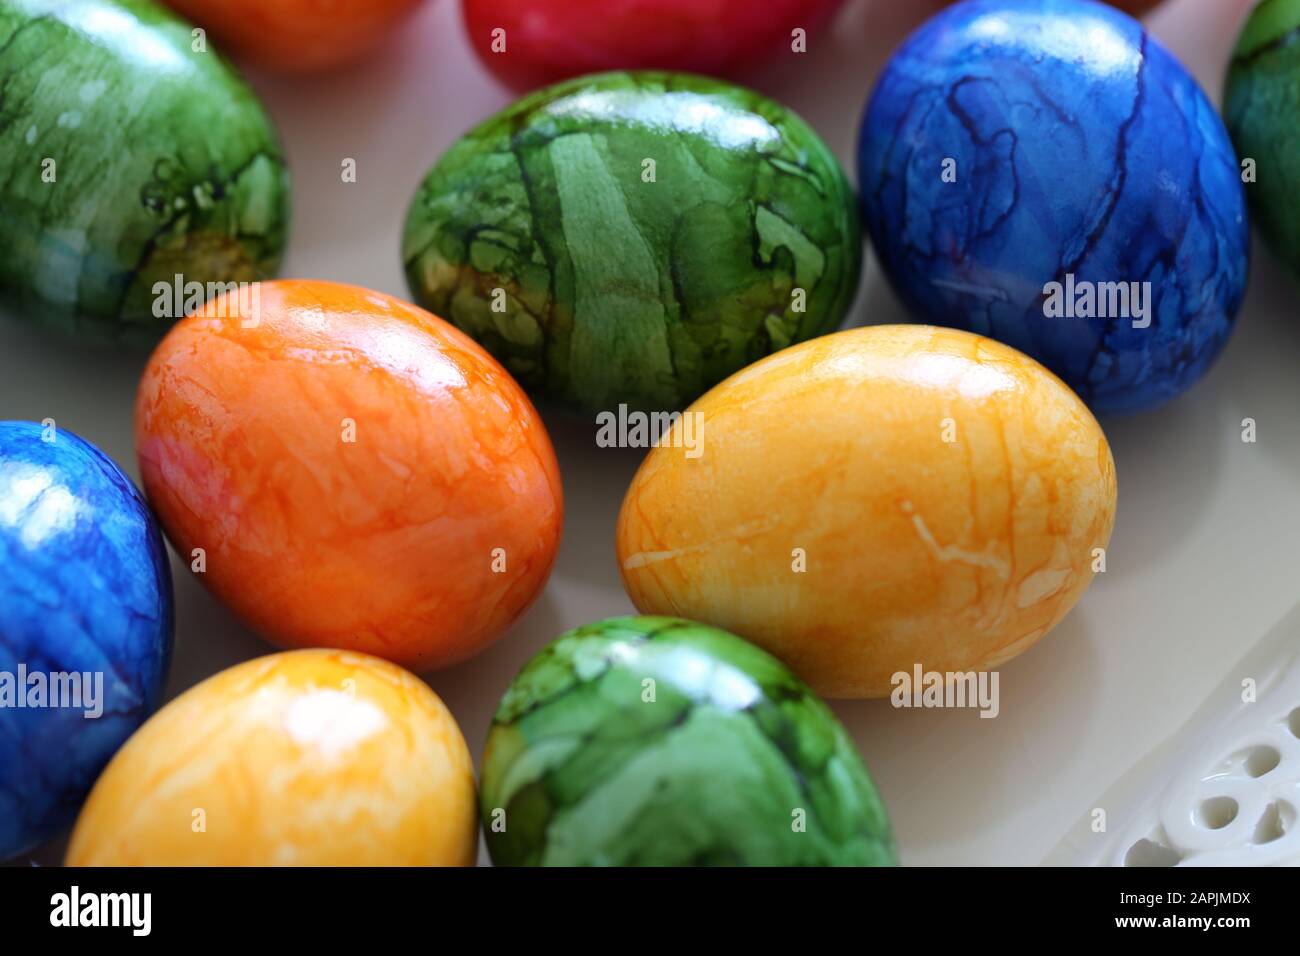 Decorazioni pasquali colorate e gioiose su un tavolo. Immagine a colori di closeup di molteplici uova di Pasqua dipinte con colori felici e vivaci. Foto Stock